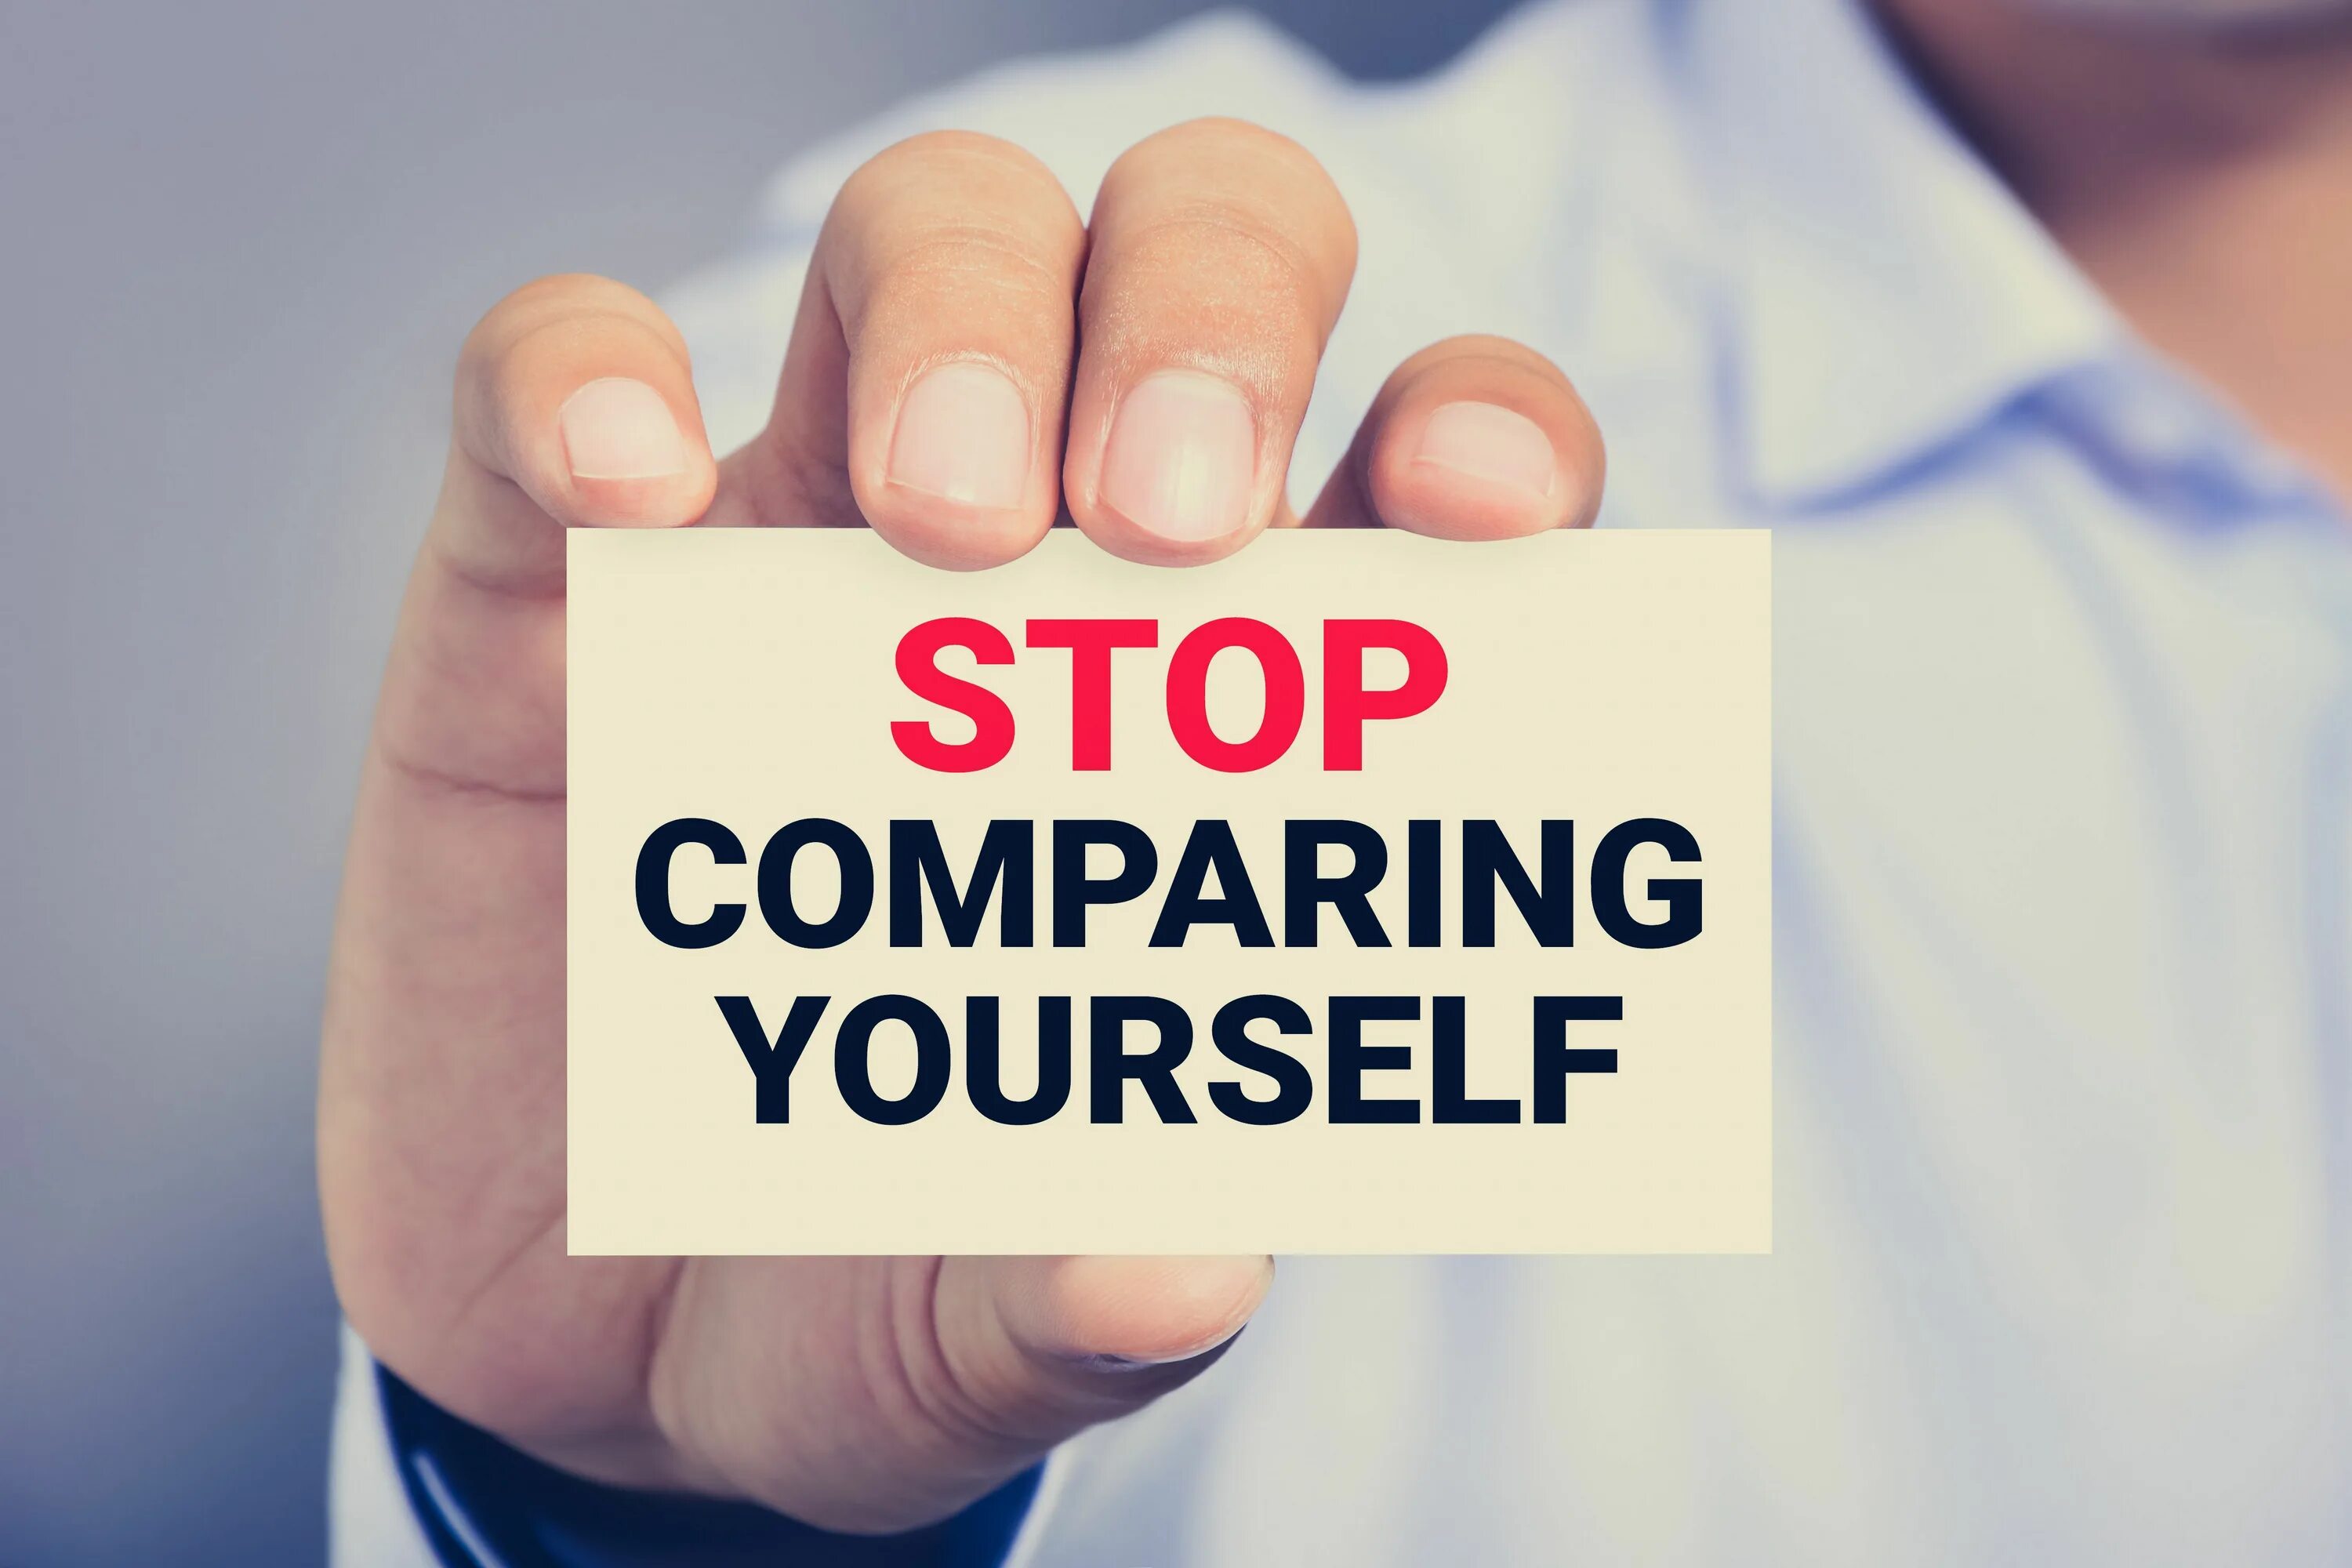 Compare yourself